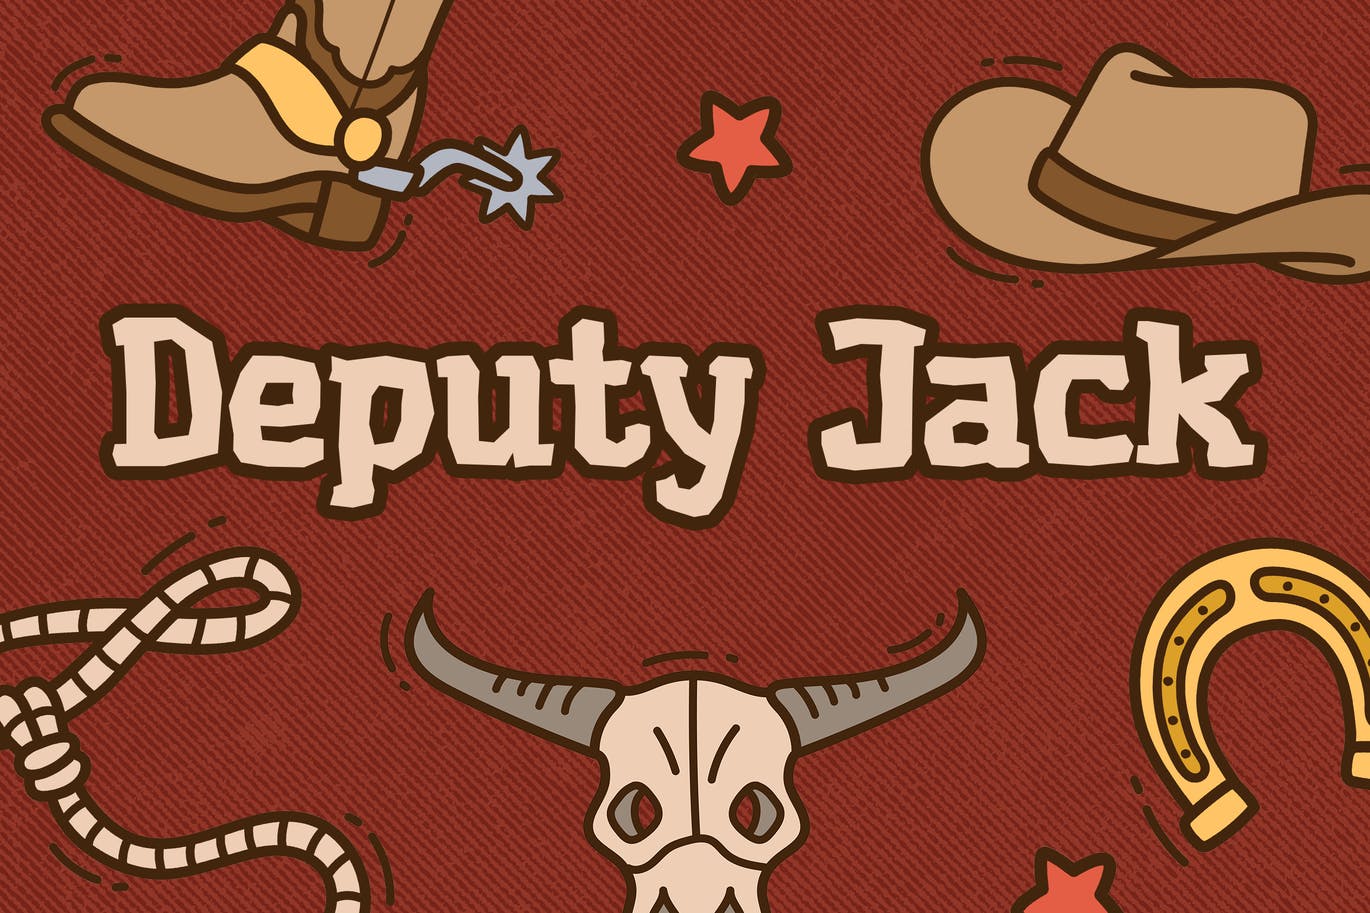 西部牛仔儿童卡通衬线字体素材 Deputy Jack – Western Kids Font 设计素材 第1张